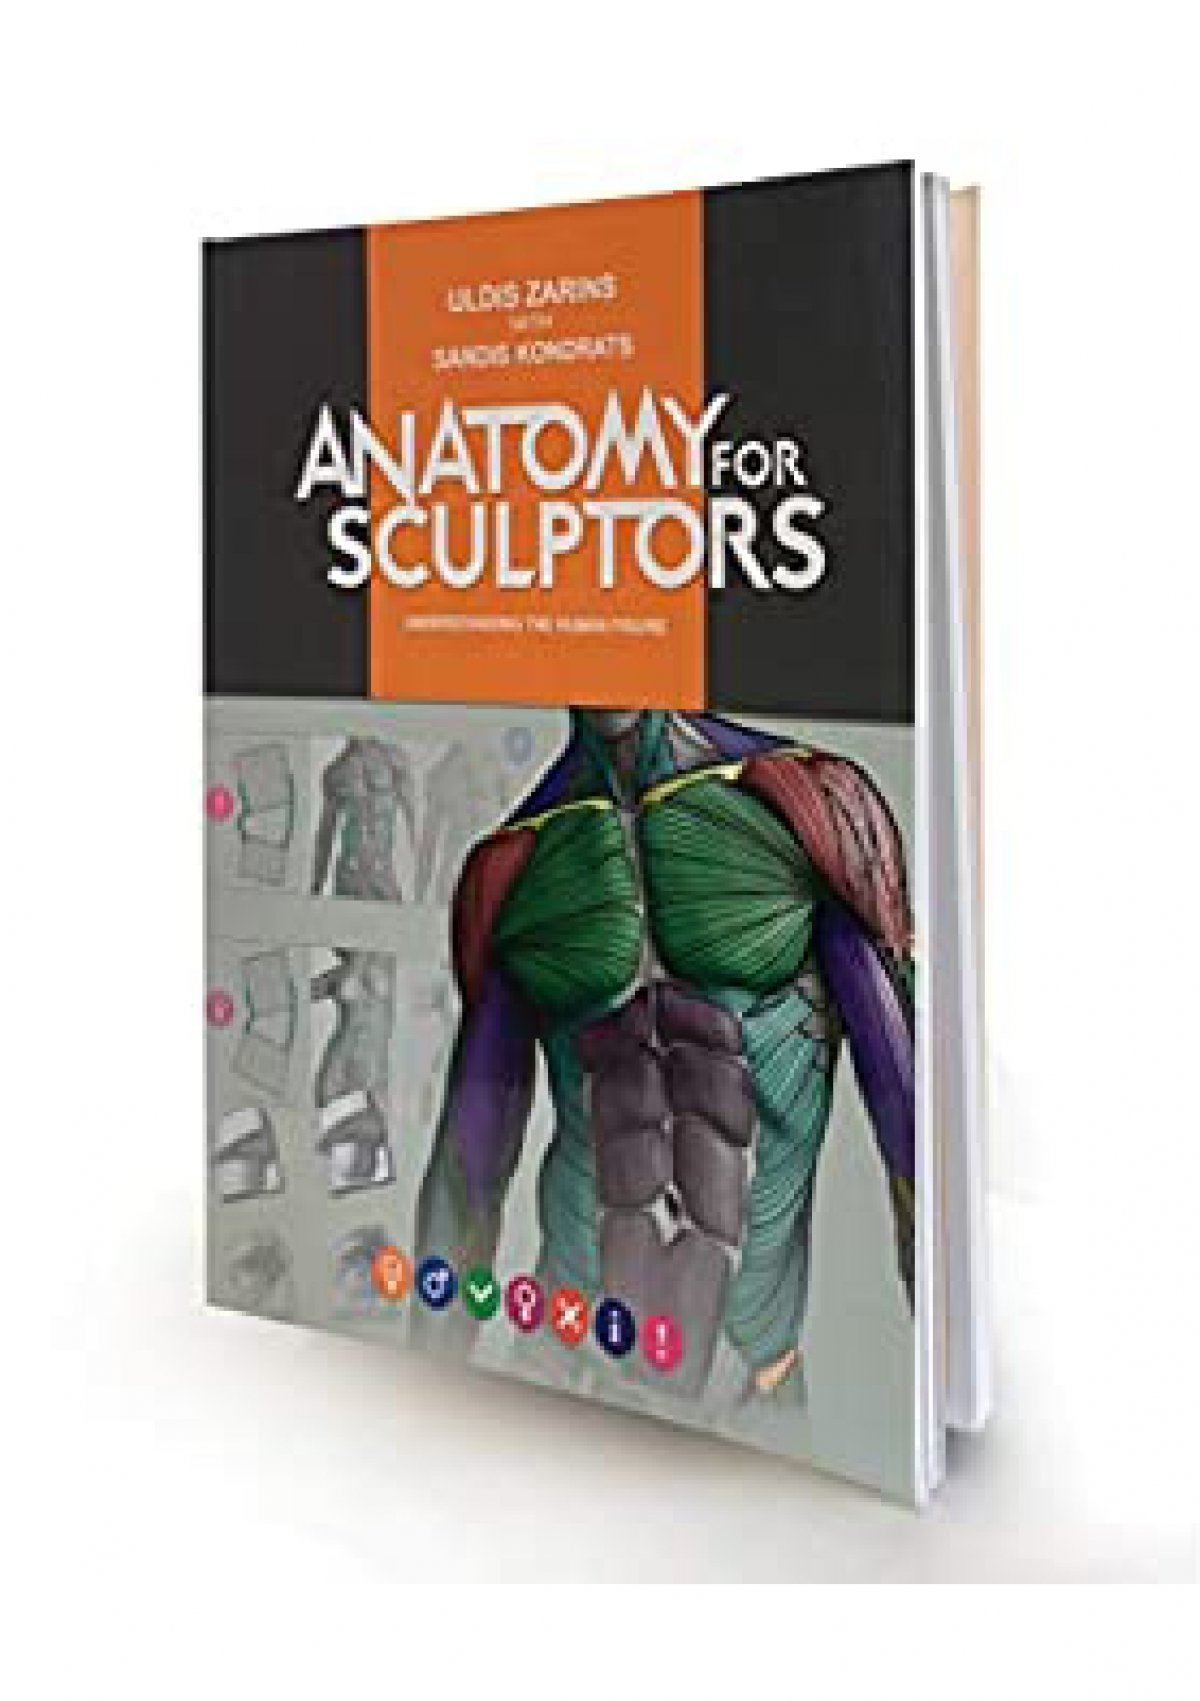 (EBOOK Anatomy for Sculptors Understanding the Human Figure DOWNLOAD @PDF